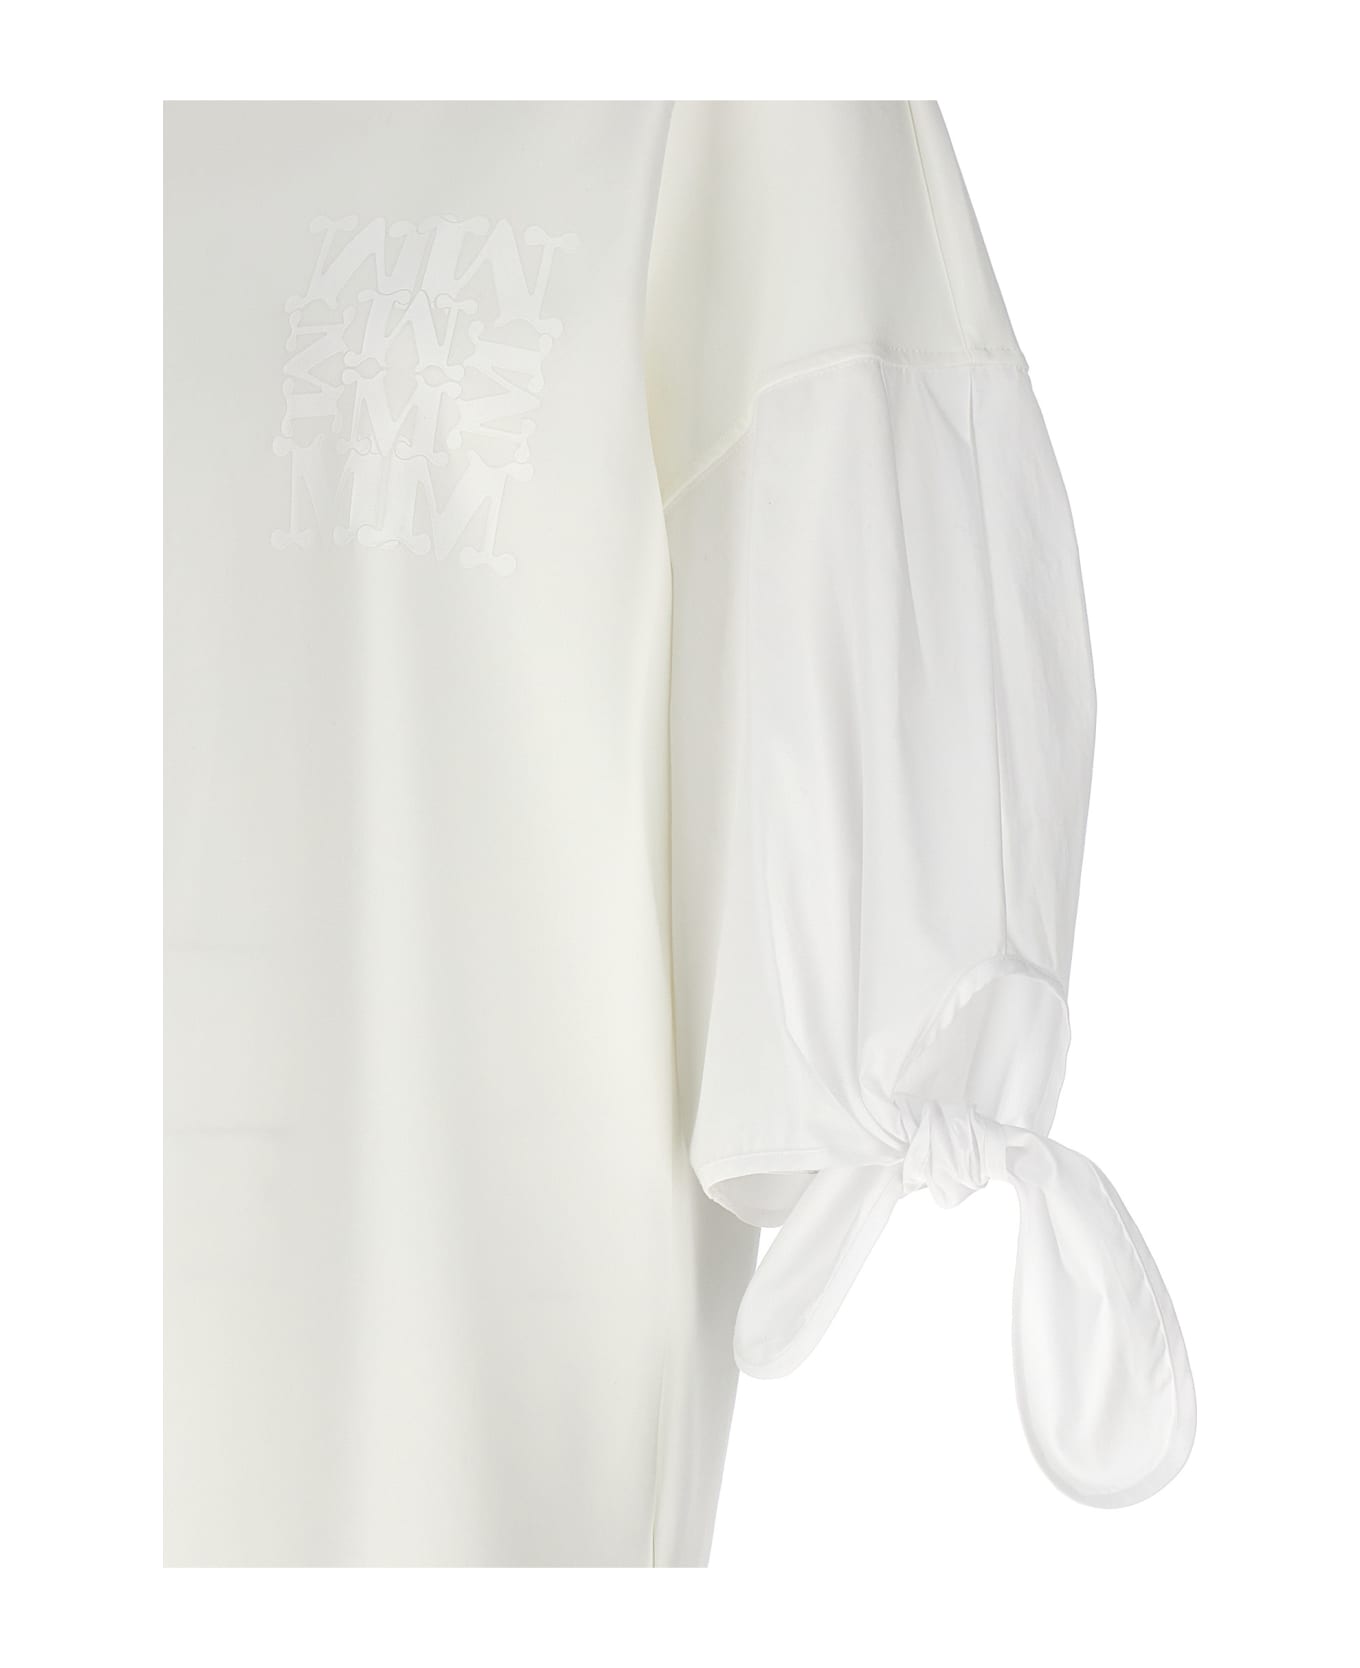 Max Mara 'agora' Dress - White